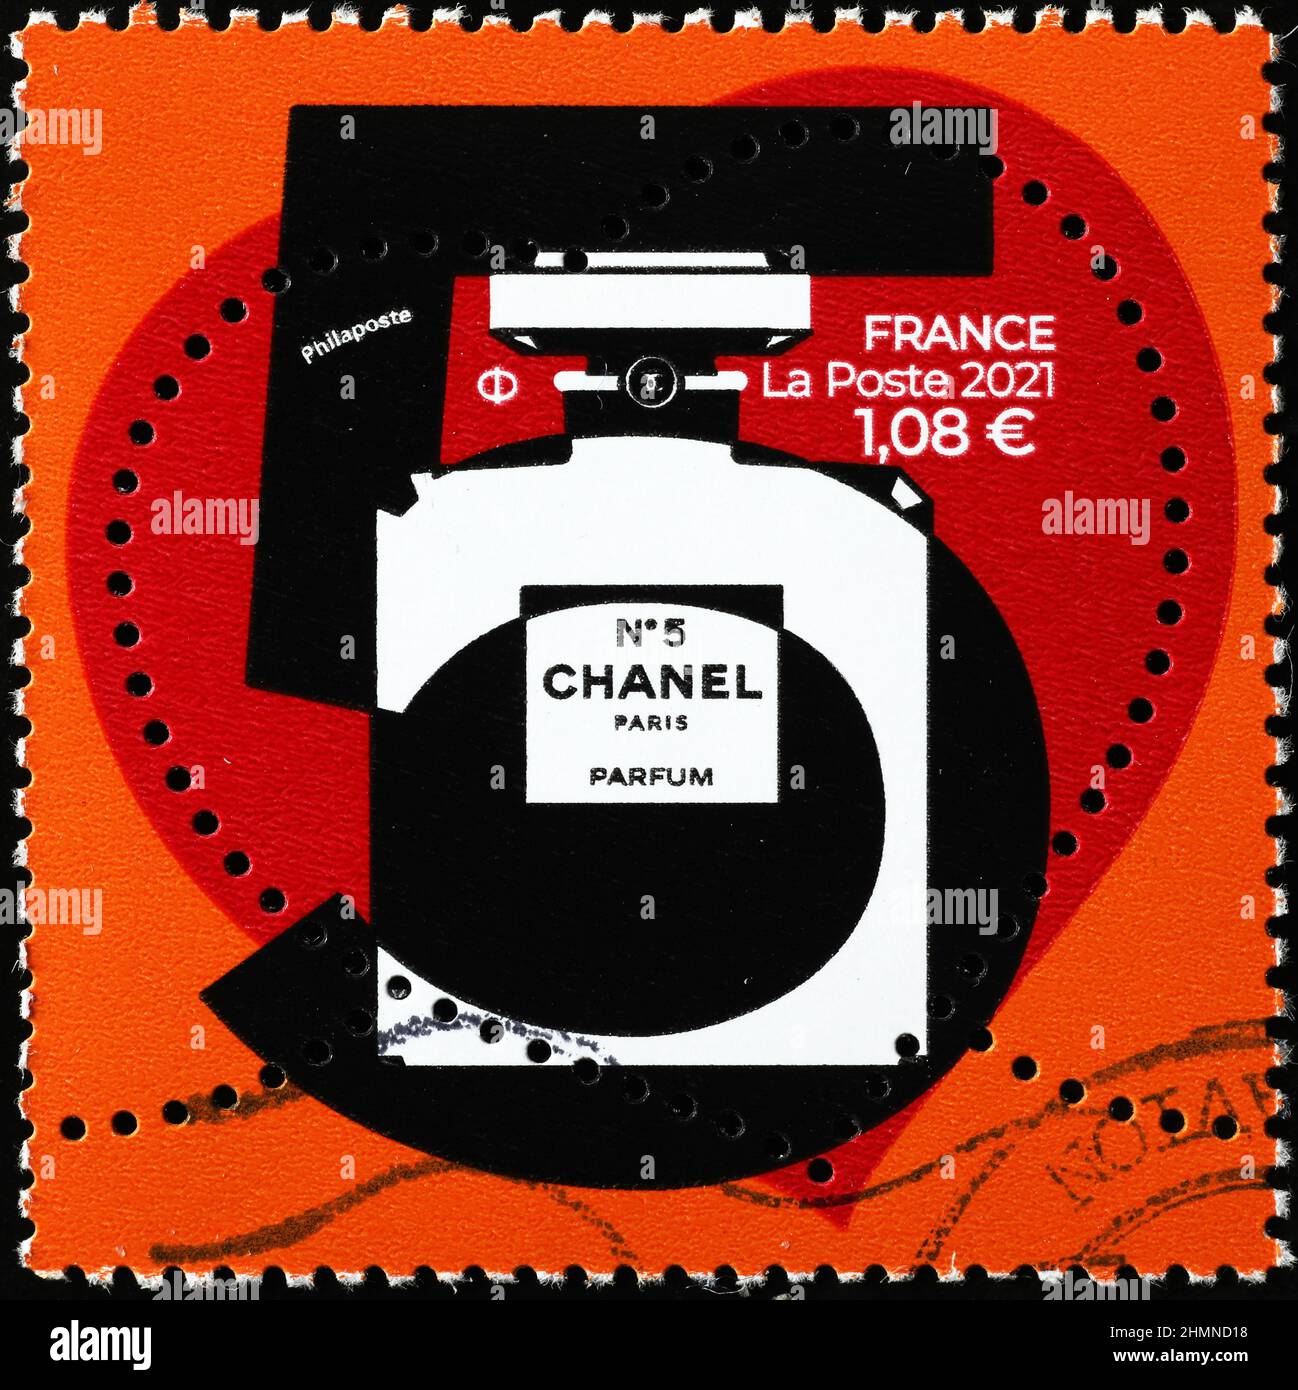 Chanel 5 Banque de photographies et d'images à haute résolution - Alamy